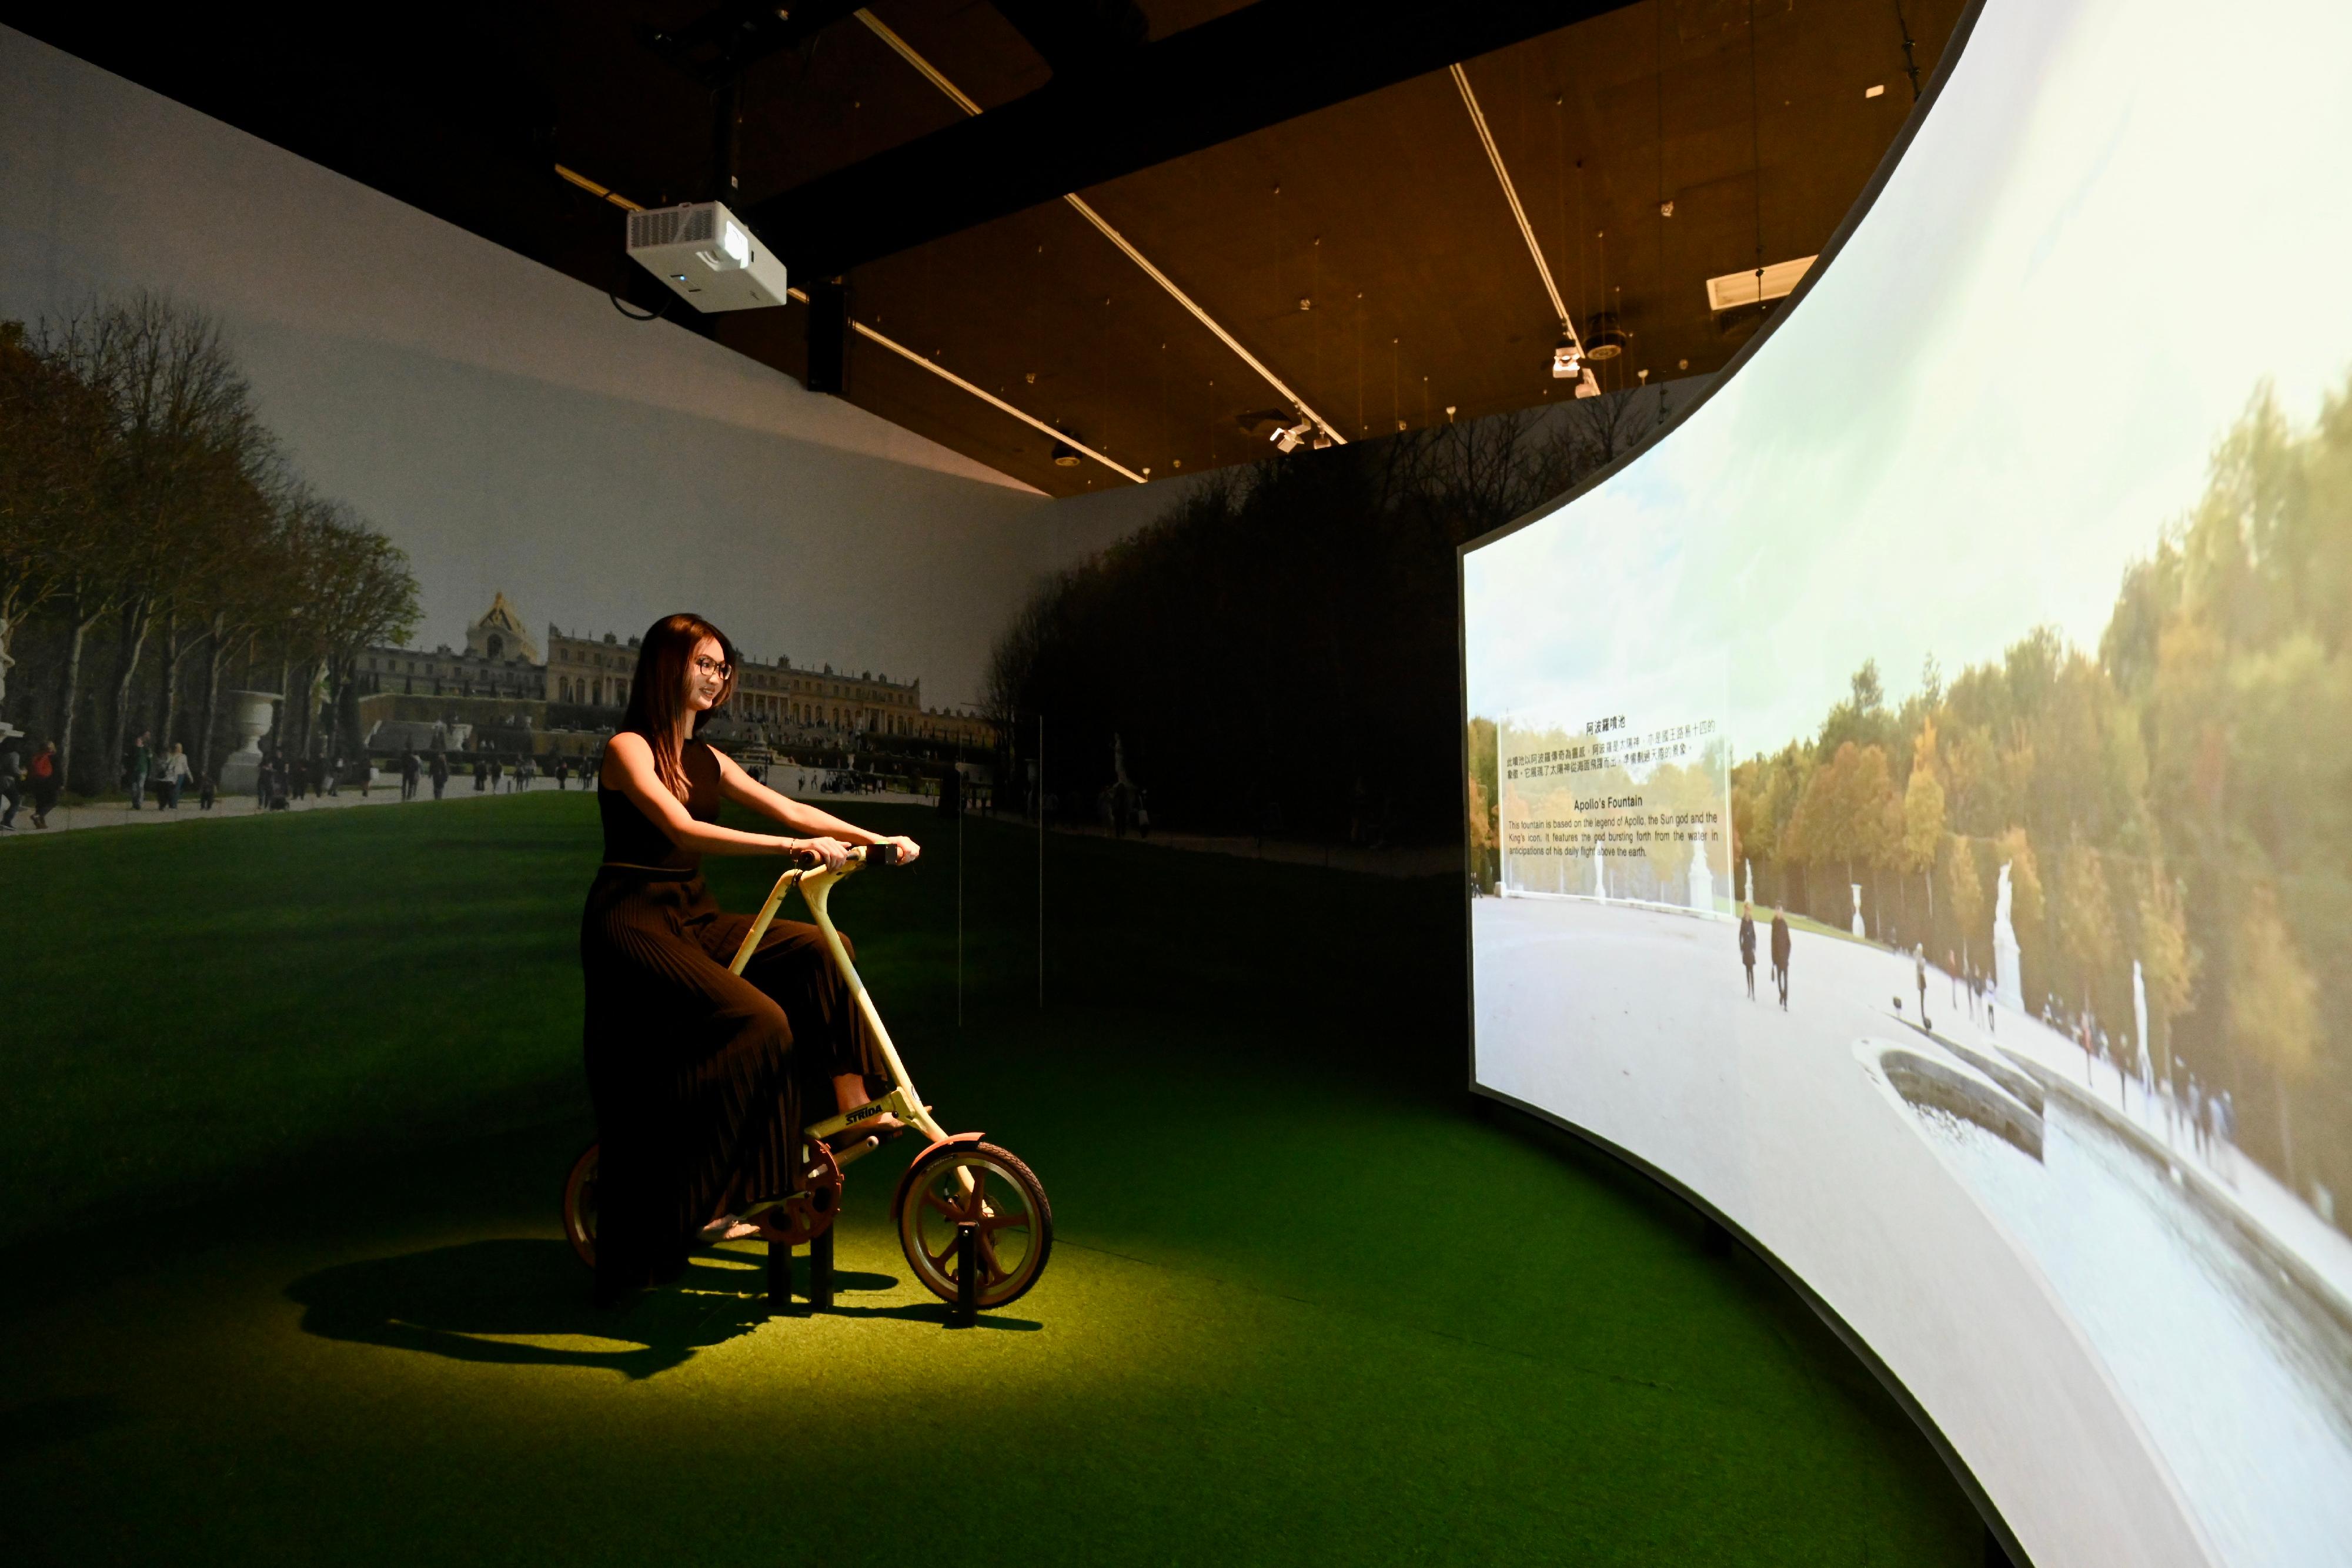 「虚拟凡尔赛宫之旅」展览开幕典礼今日（四月十九日）在香港文化博物馆举行。图示展厅内的互动单车装置，让观众彷佛漫游在凡尔赛宫的王家园林之中，欣赏其自然美态。